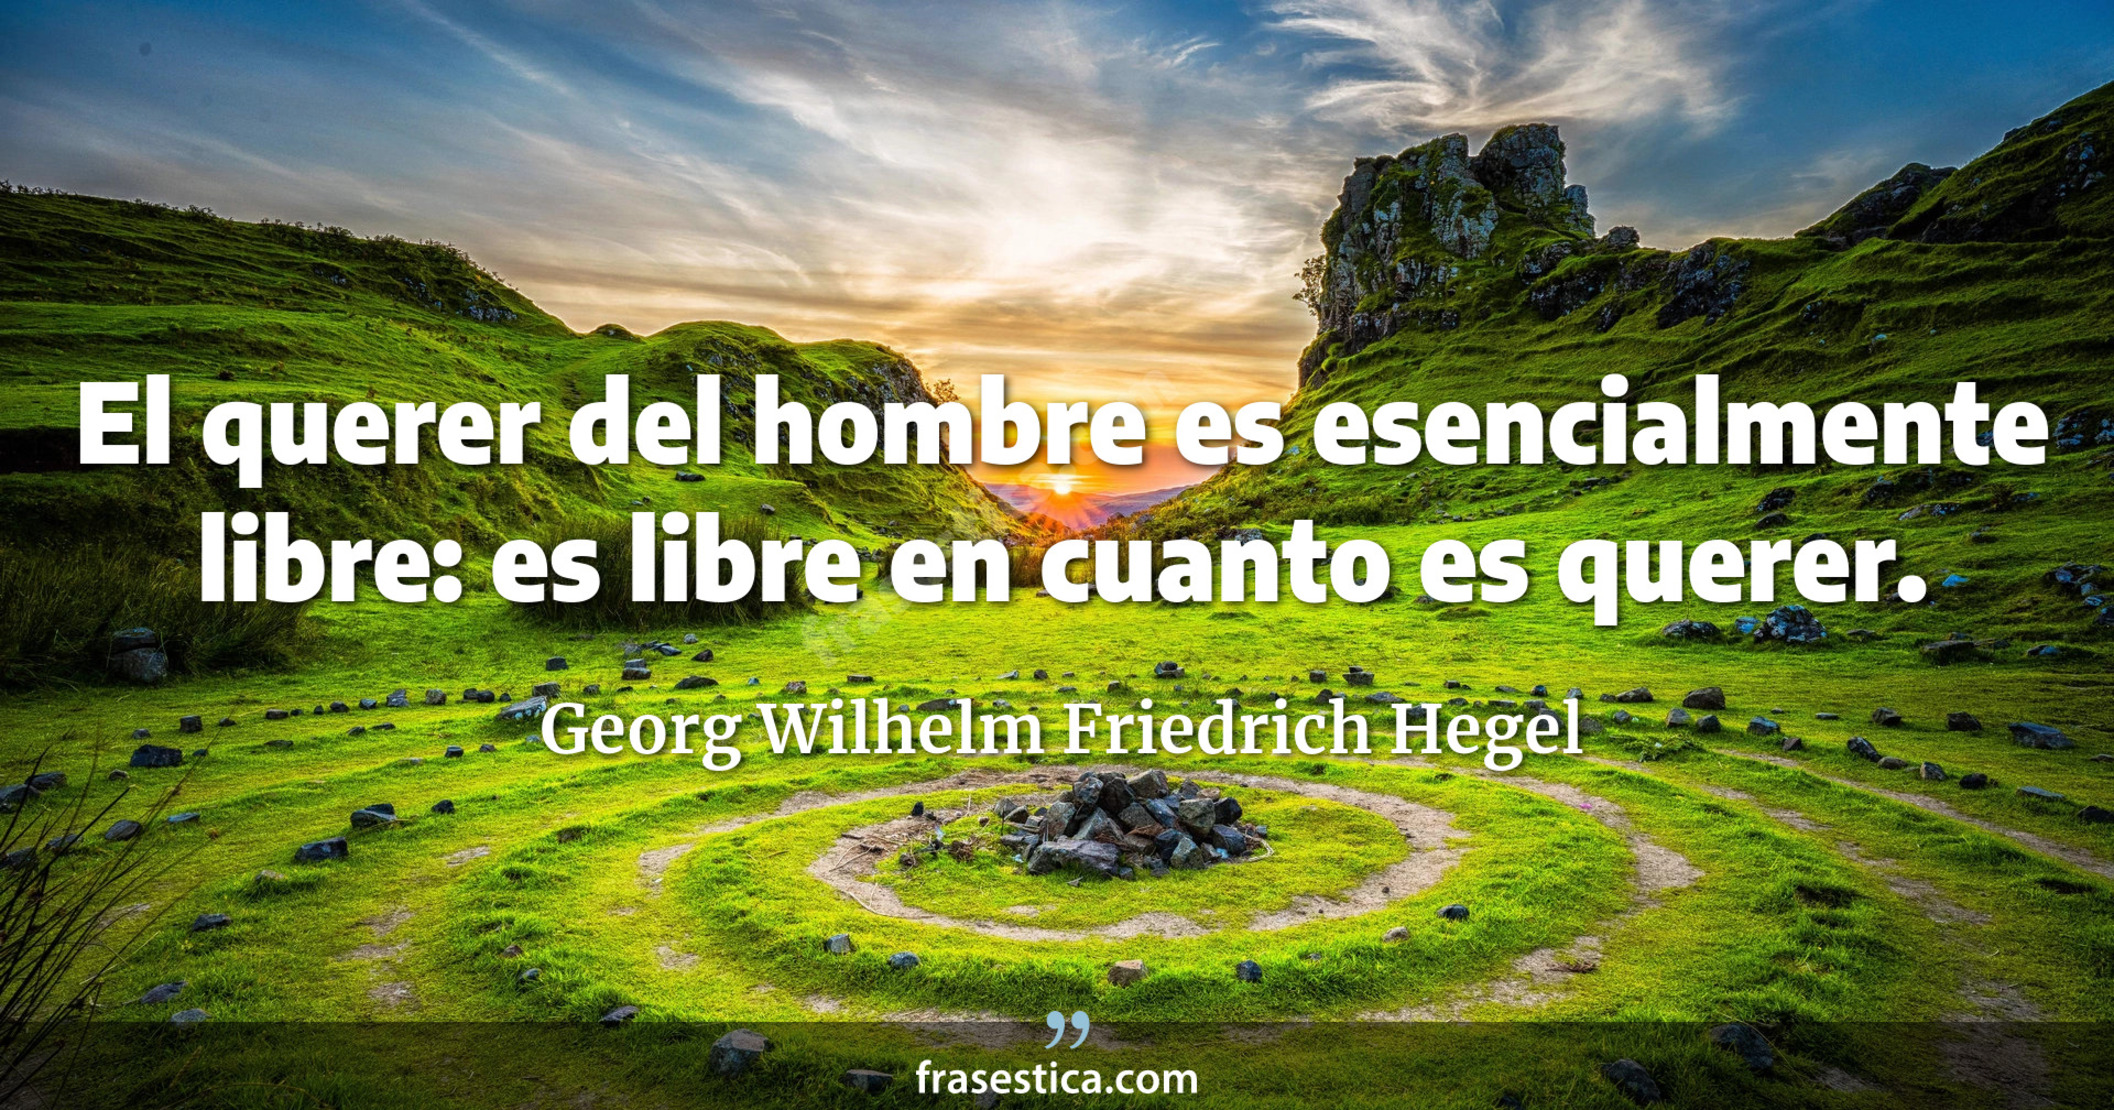 El querer del hombre es esencialmente libre: es libre en cuanto es querer. - Georg Wilhelm Friedrich Hegel